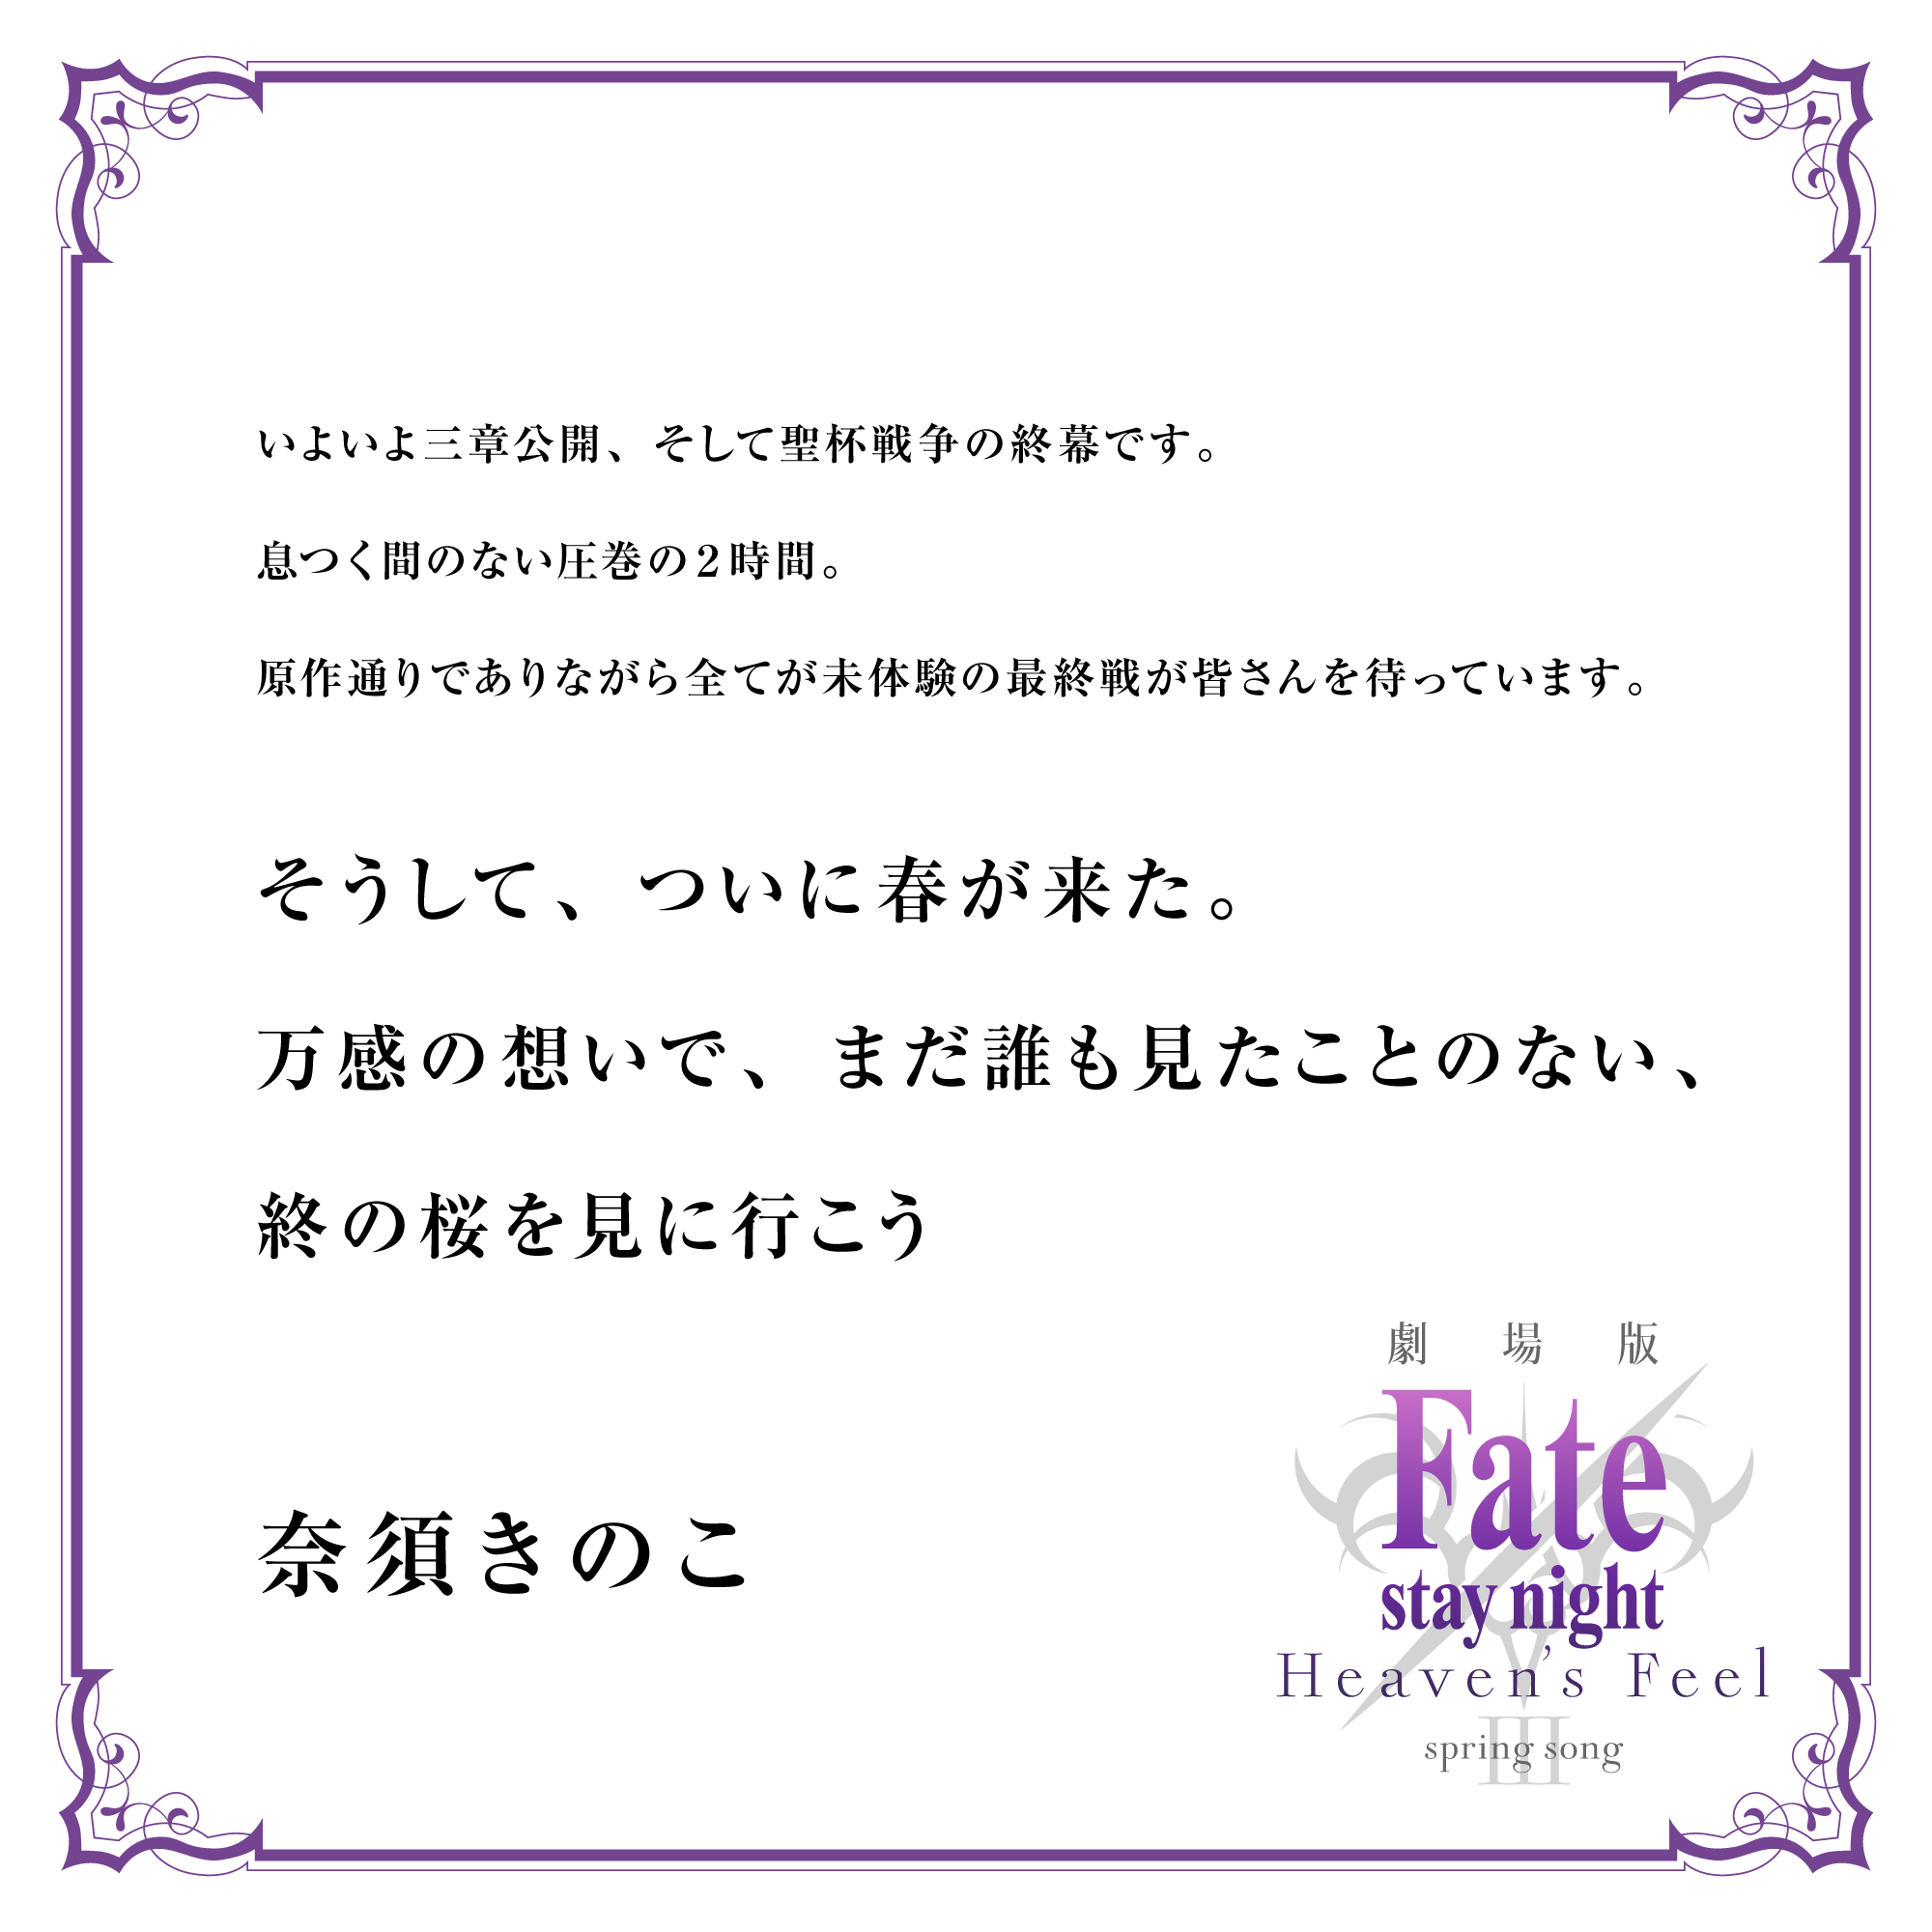 剧院版动画《Fate/天之杯Ⅲ春之歌》正在日本上映 贺词、贺图公开